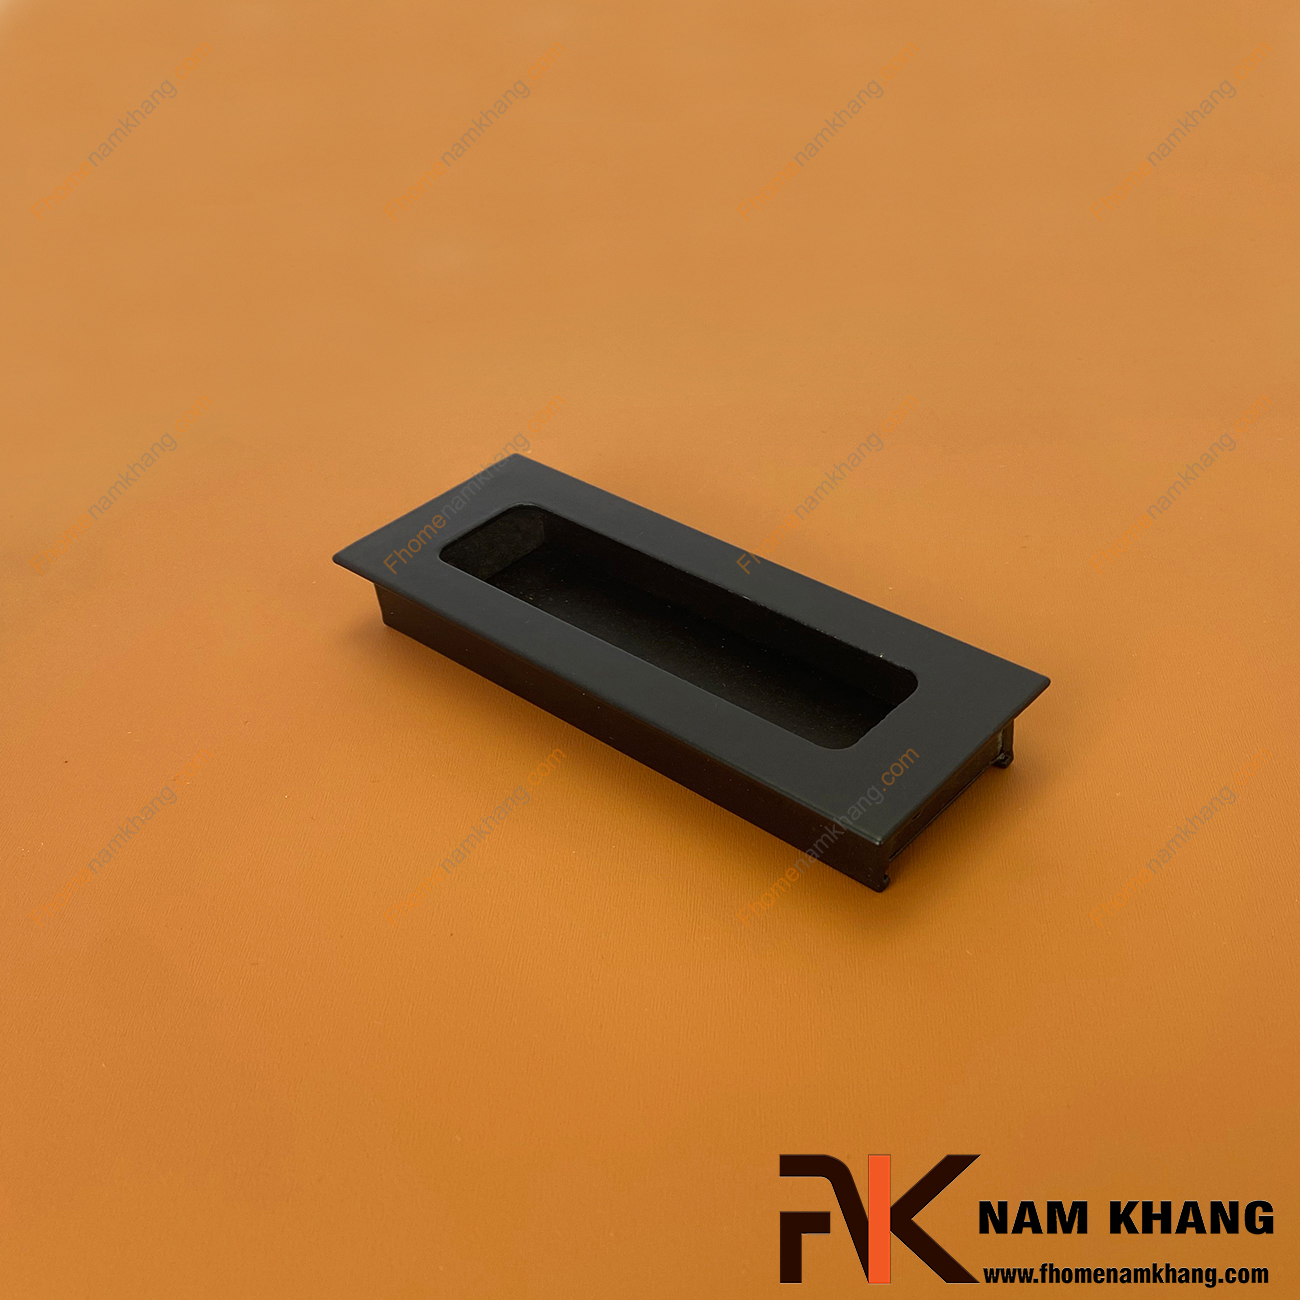 Tay nắm âm tủ bằng nhôm đen mờ NK093-D là loại tay nắm chuyên dùng cho các loại tủ đặt ở những nơi có không gian hạn chế hoặc dùng để nâng cao tính thẫm mỹ của sản phẩm